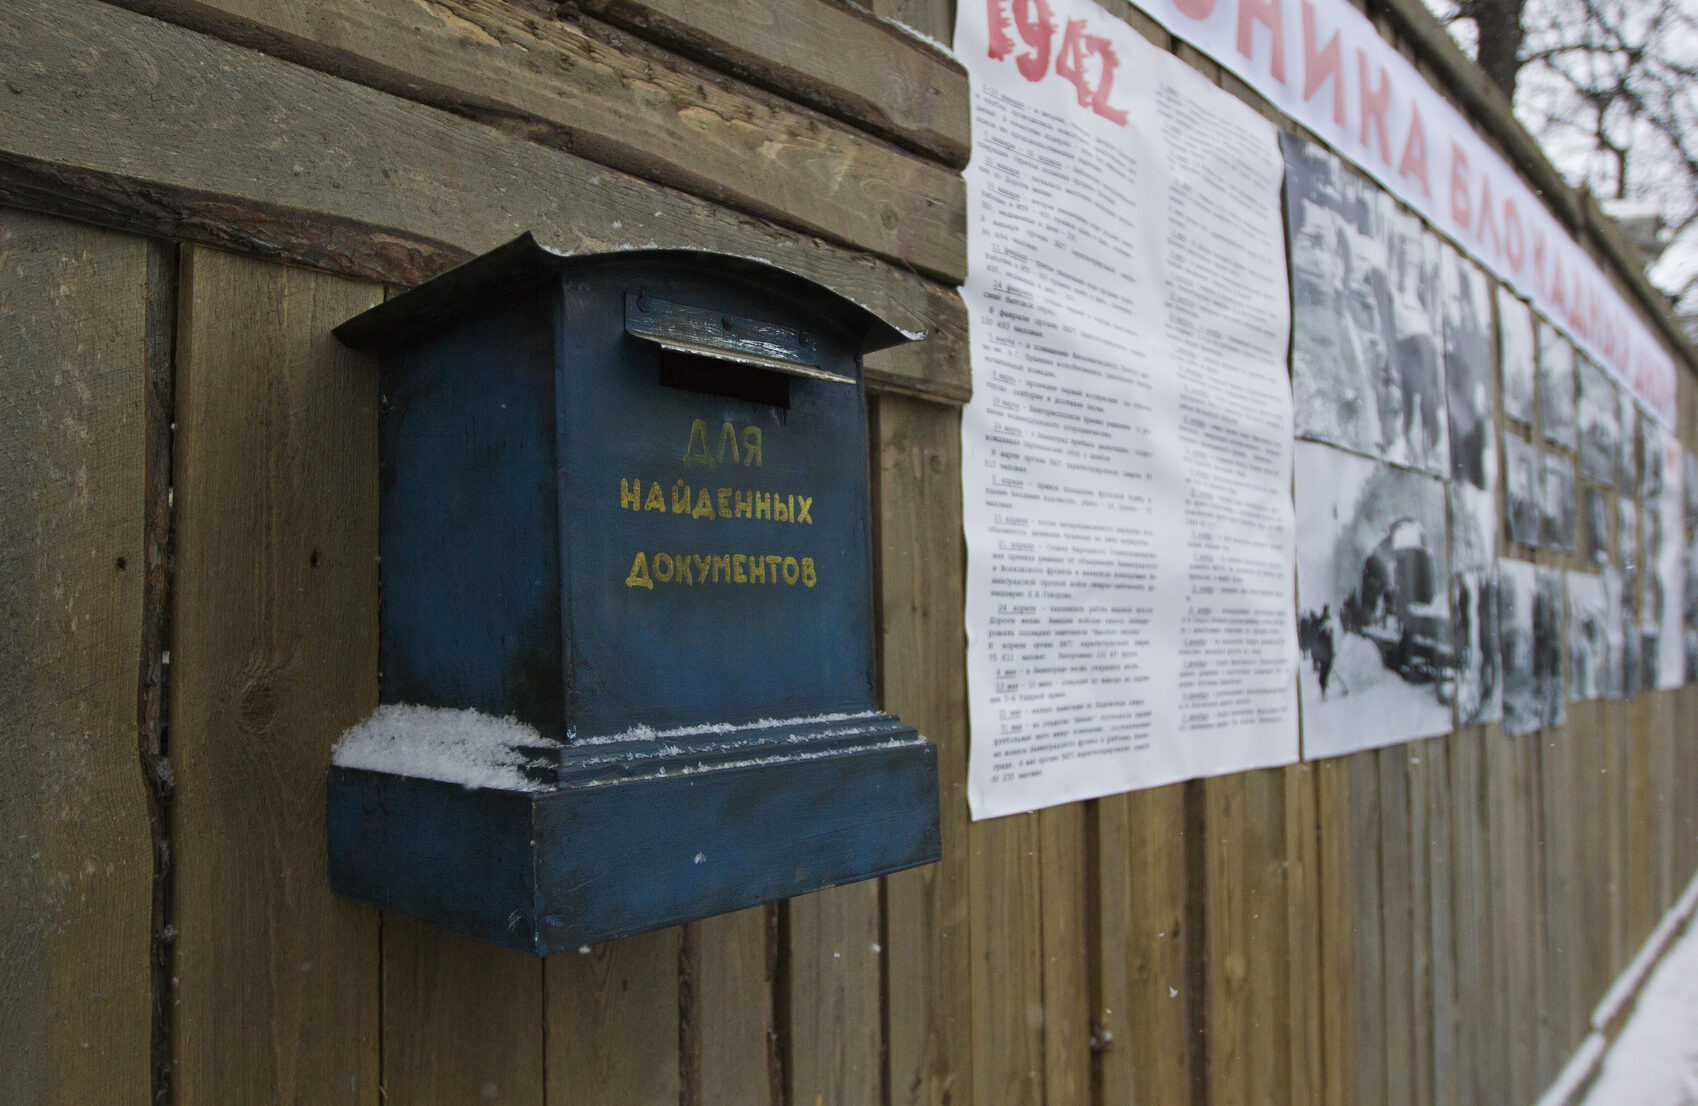 Ленинградские письма расскажут о блокадных годах